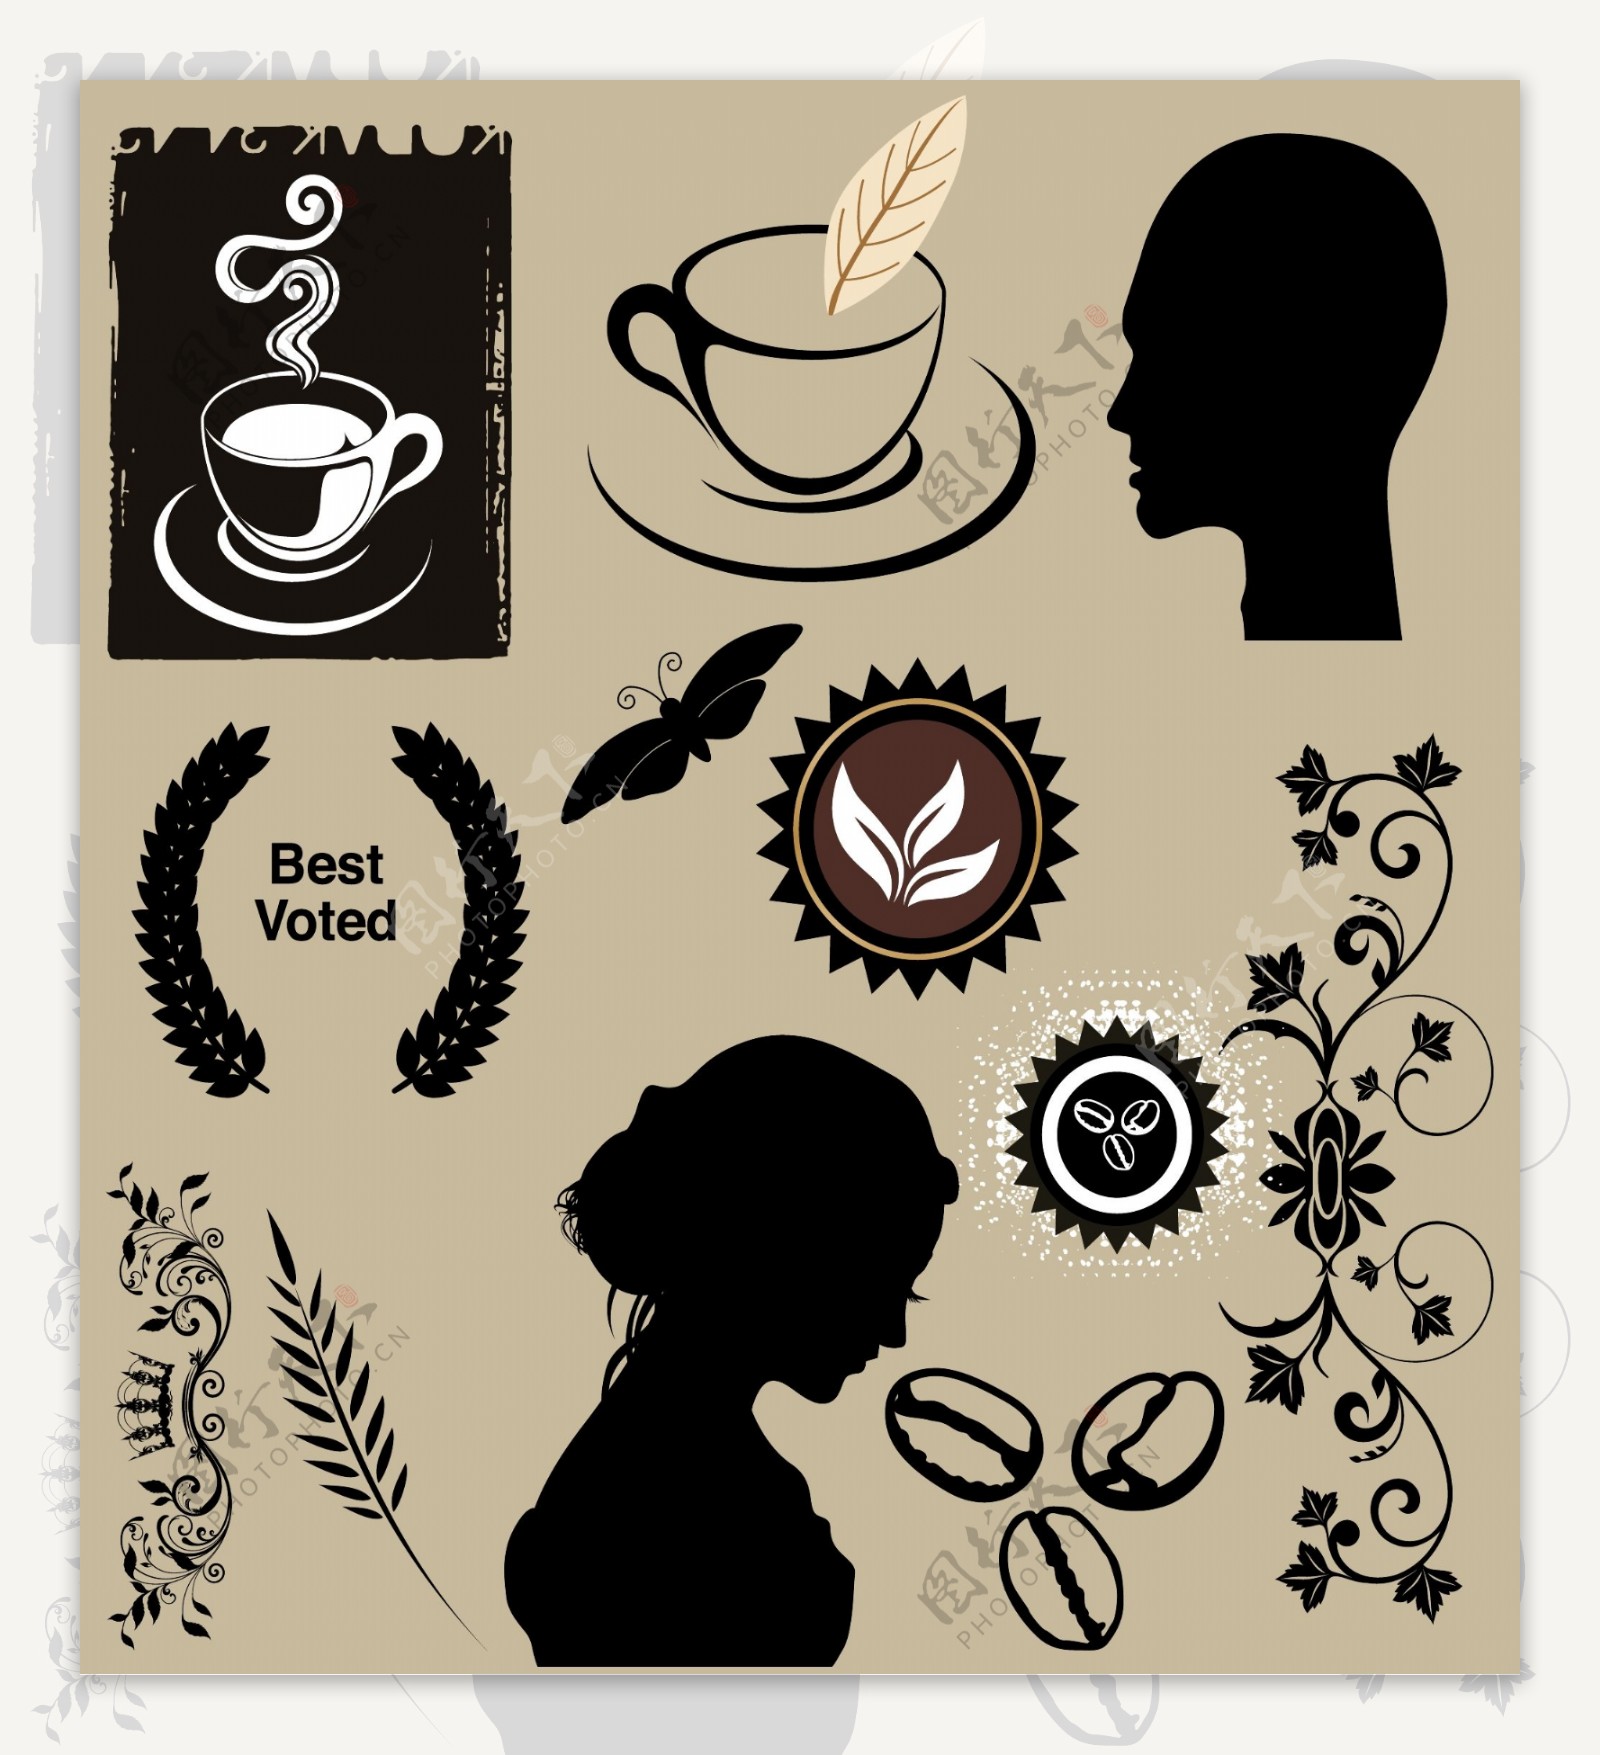 咖啡元素标签头像剪影矢量图